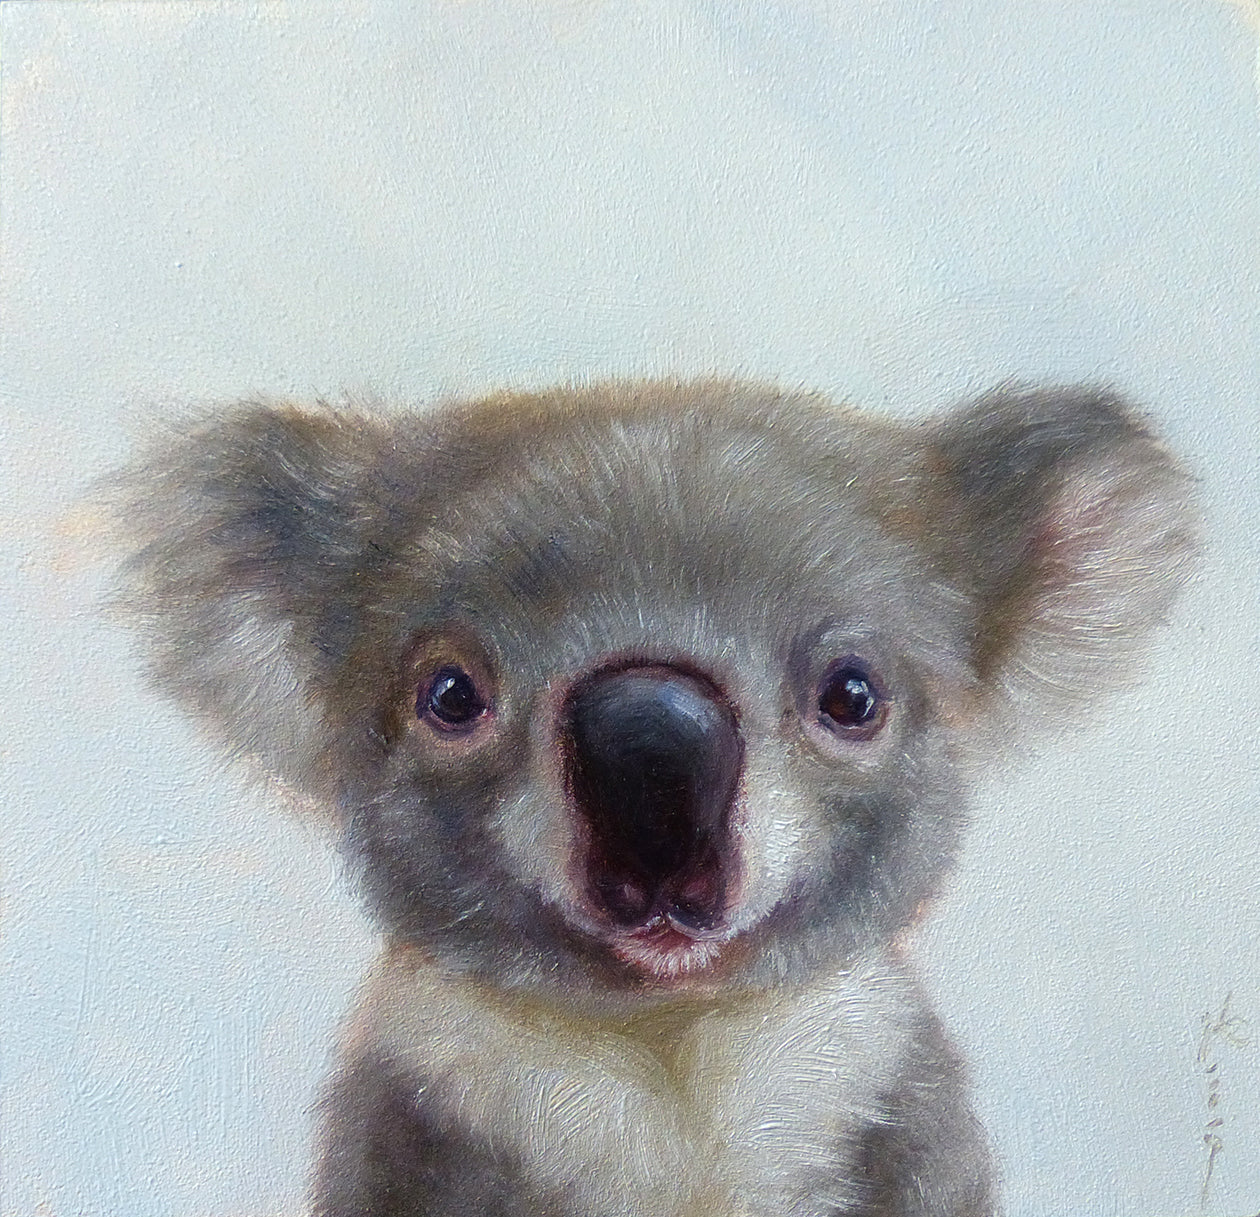 Lil' Koala